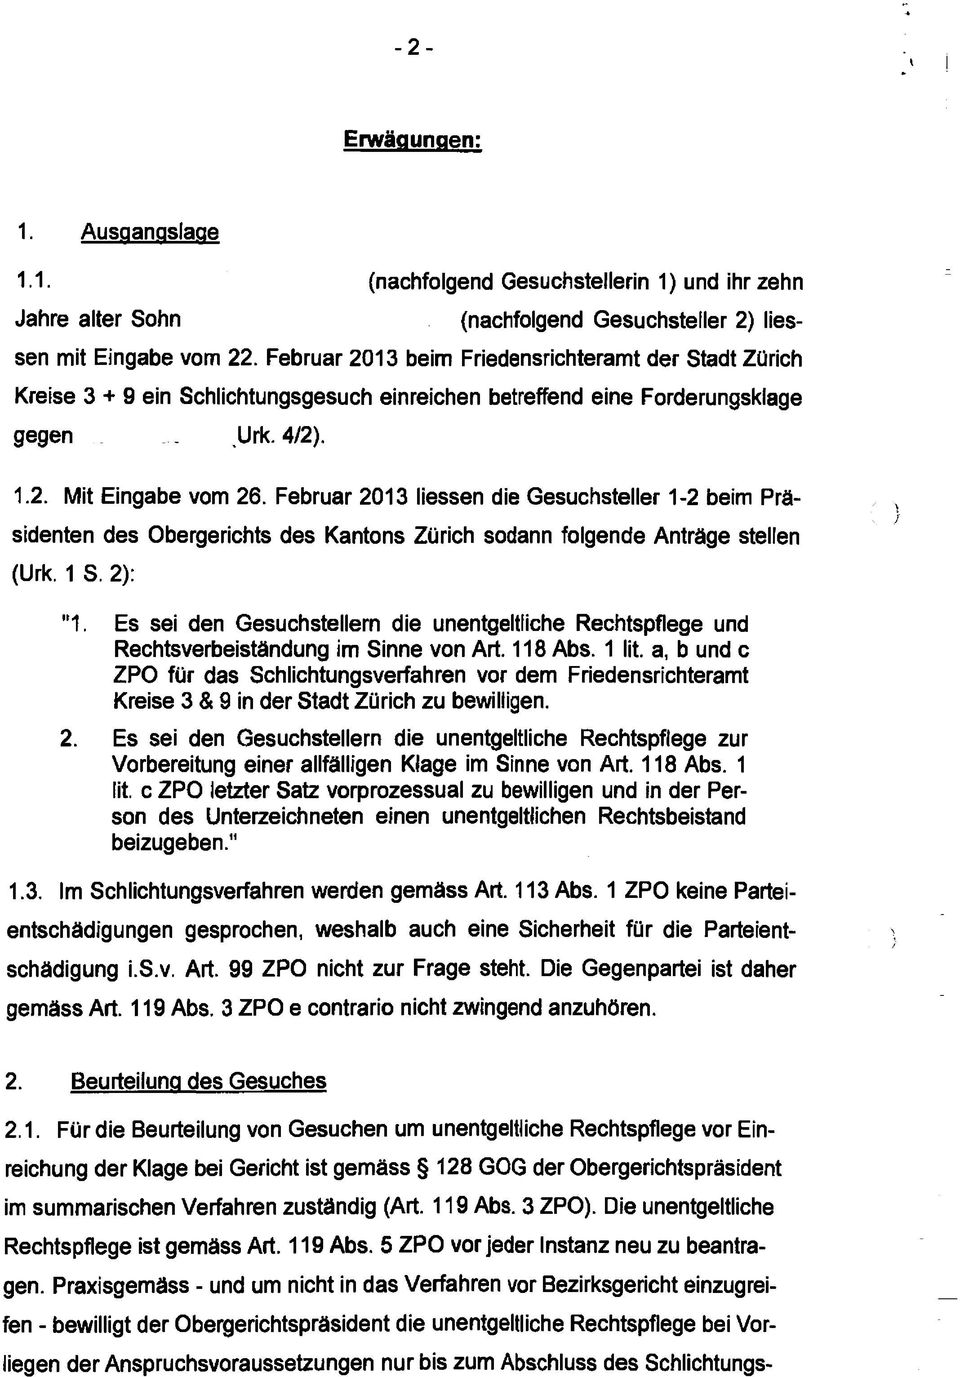 Februar 2013 Hessen die Gesuchsteller 1-2 beim Präsidenten des Obergerichts des Kantons Zürich sodann folgende Anträge stellen (Urk. 1 S. 2): "1.